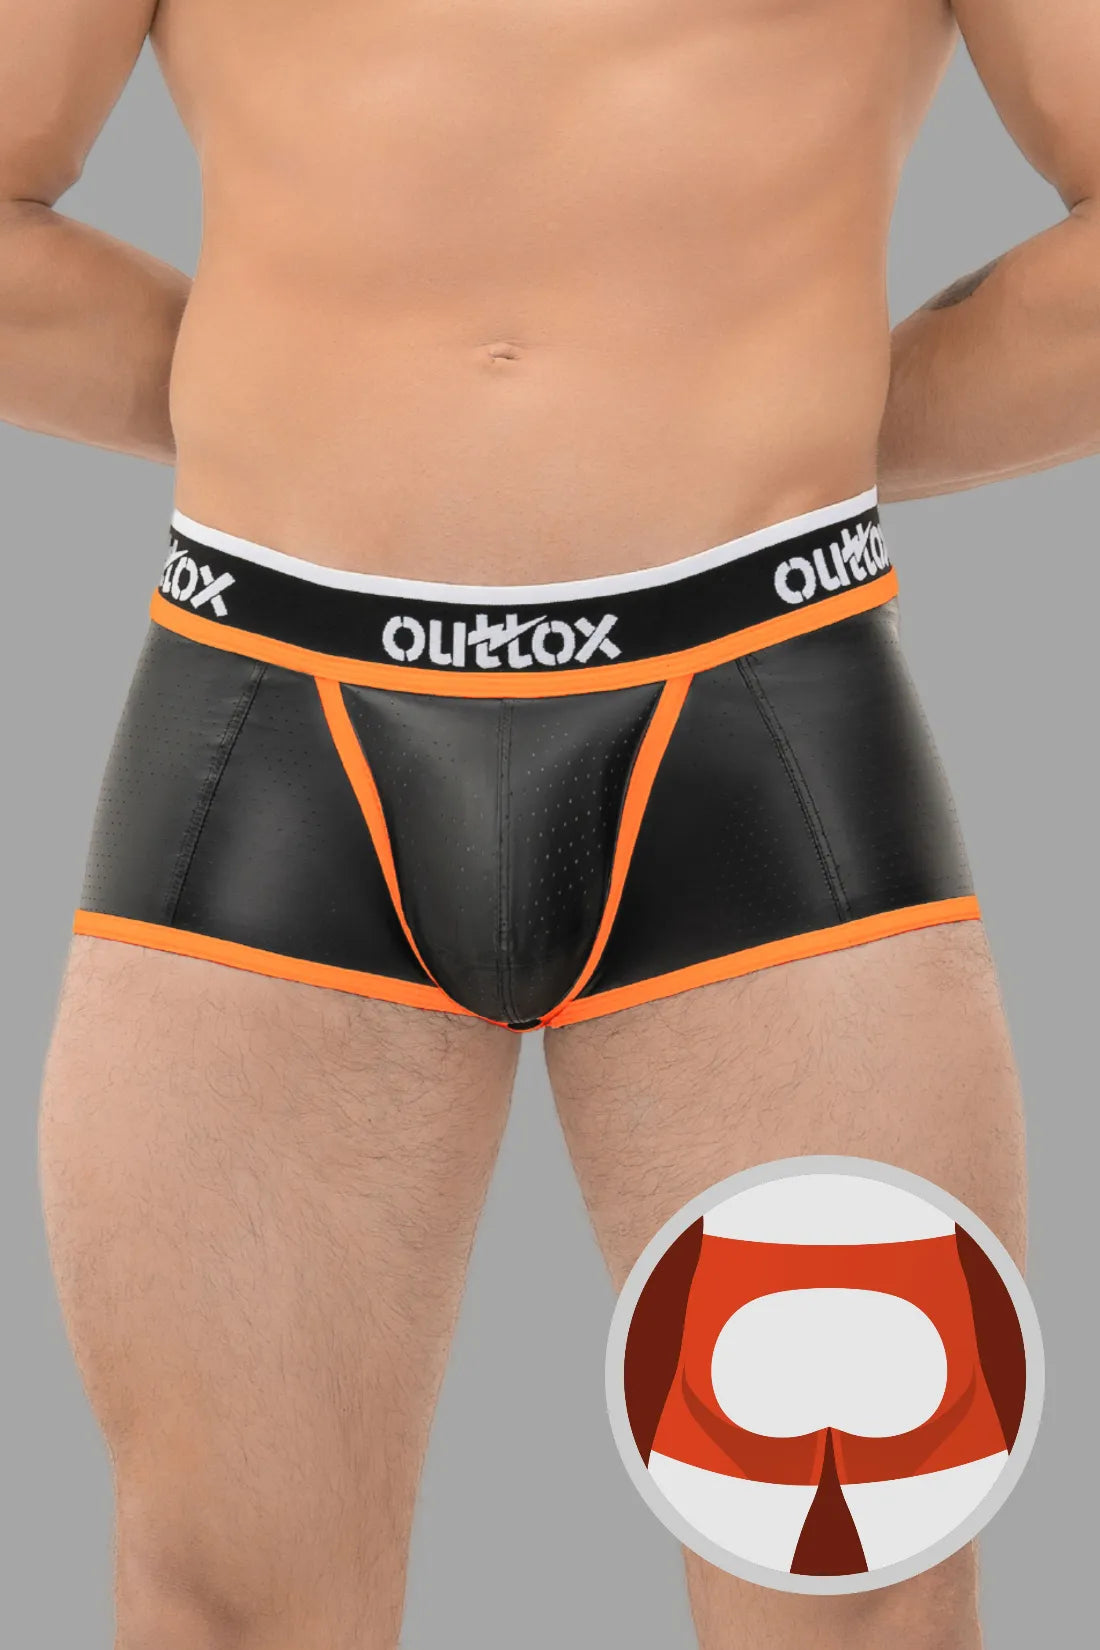 Outtox. Shorts mit offenem Rücken und Druckknopf-Codpiece. Schwarz und Orange